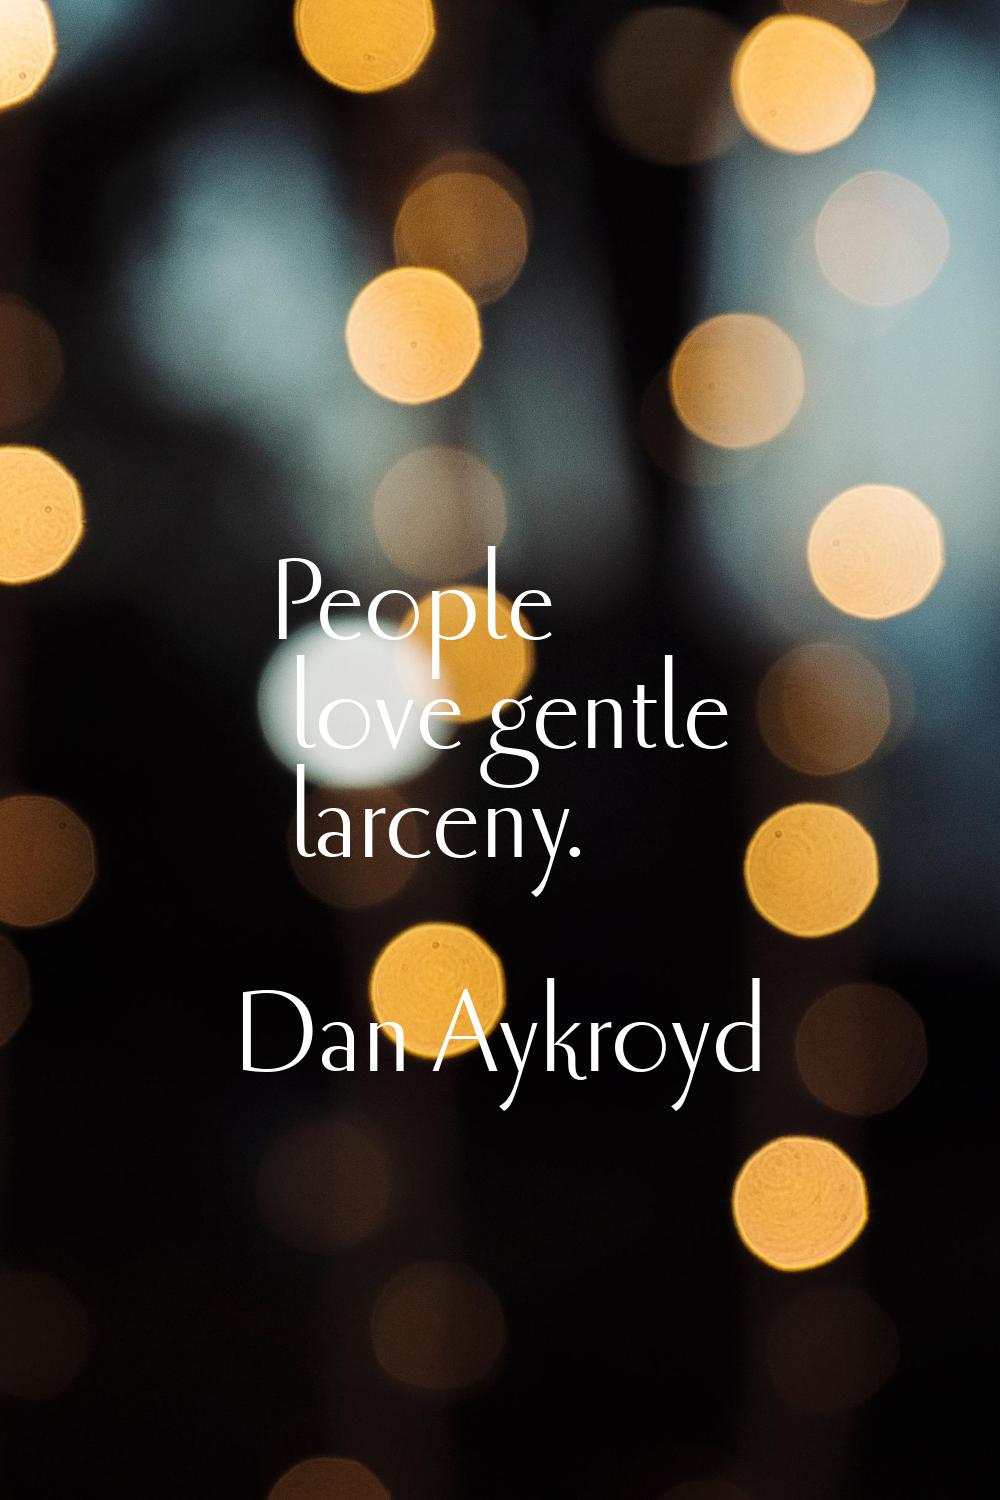 People love gentle larceny.